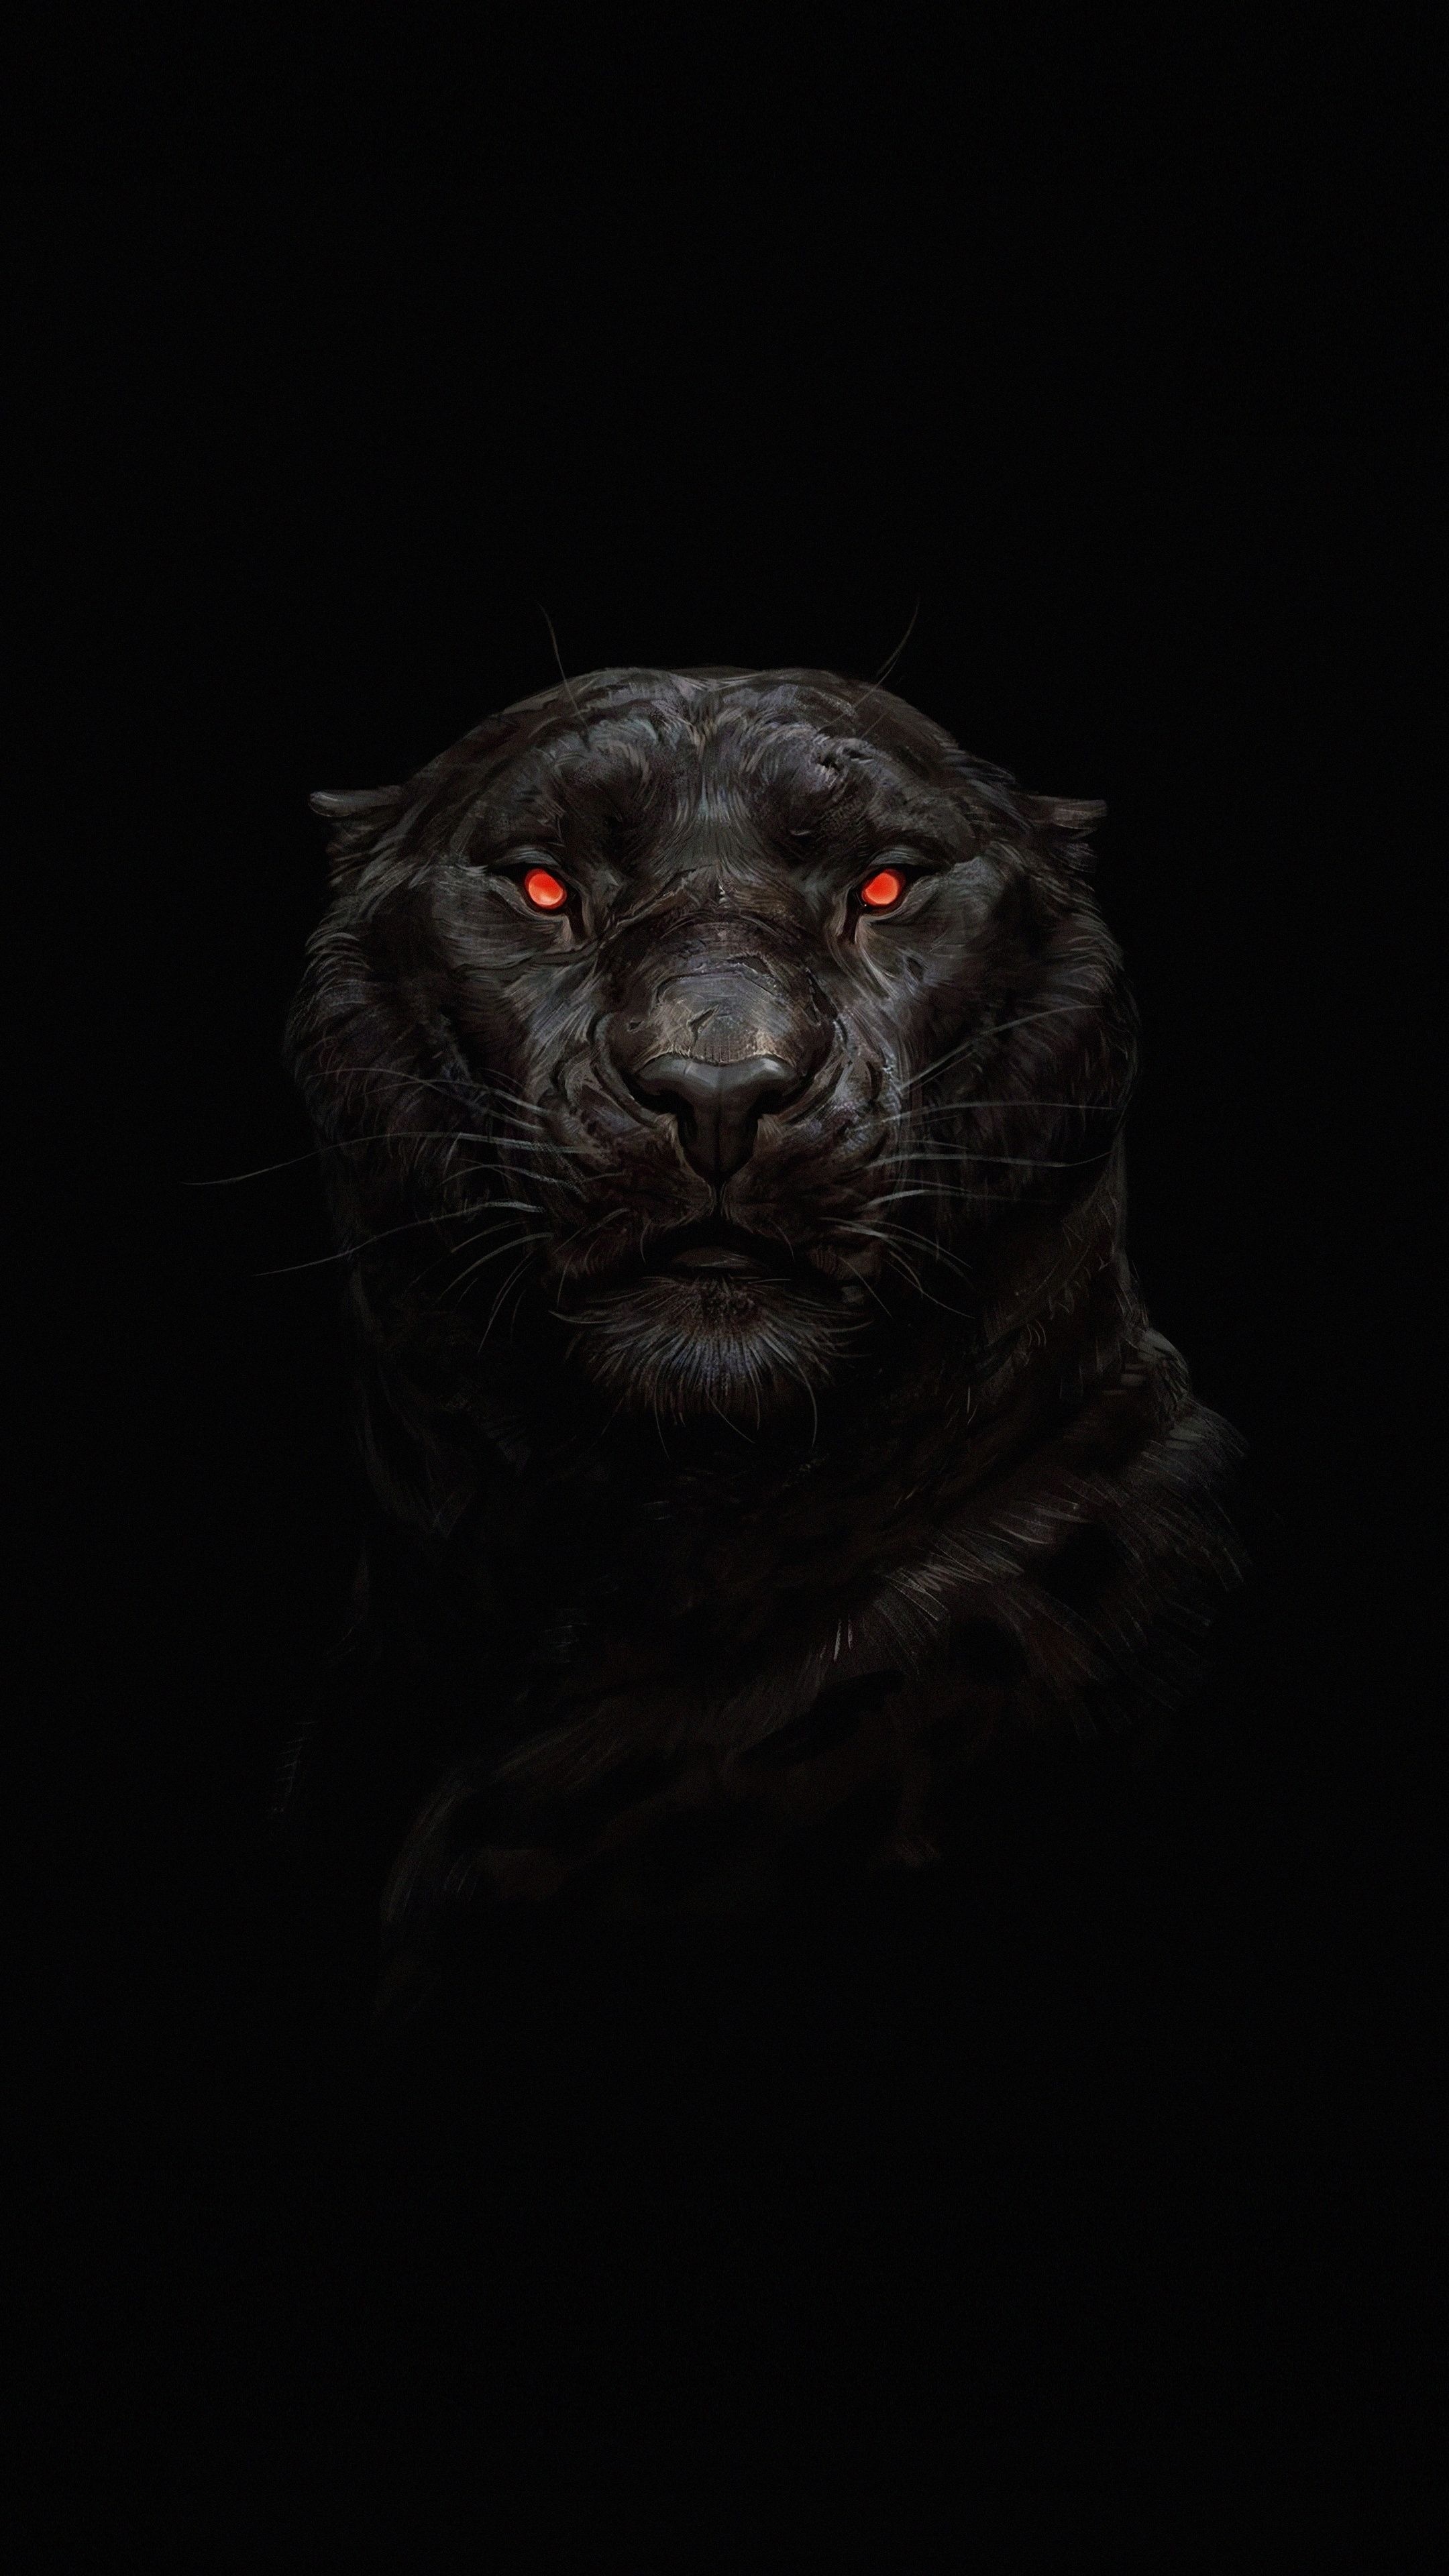 Tiger's glowing gaze, Minimal darkness, Red eye accent, Animal mystique, Dark theme, 2160x3840 4K Phone